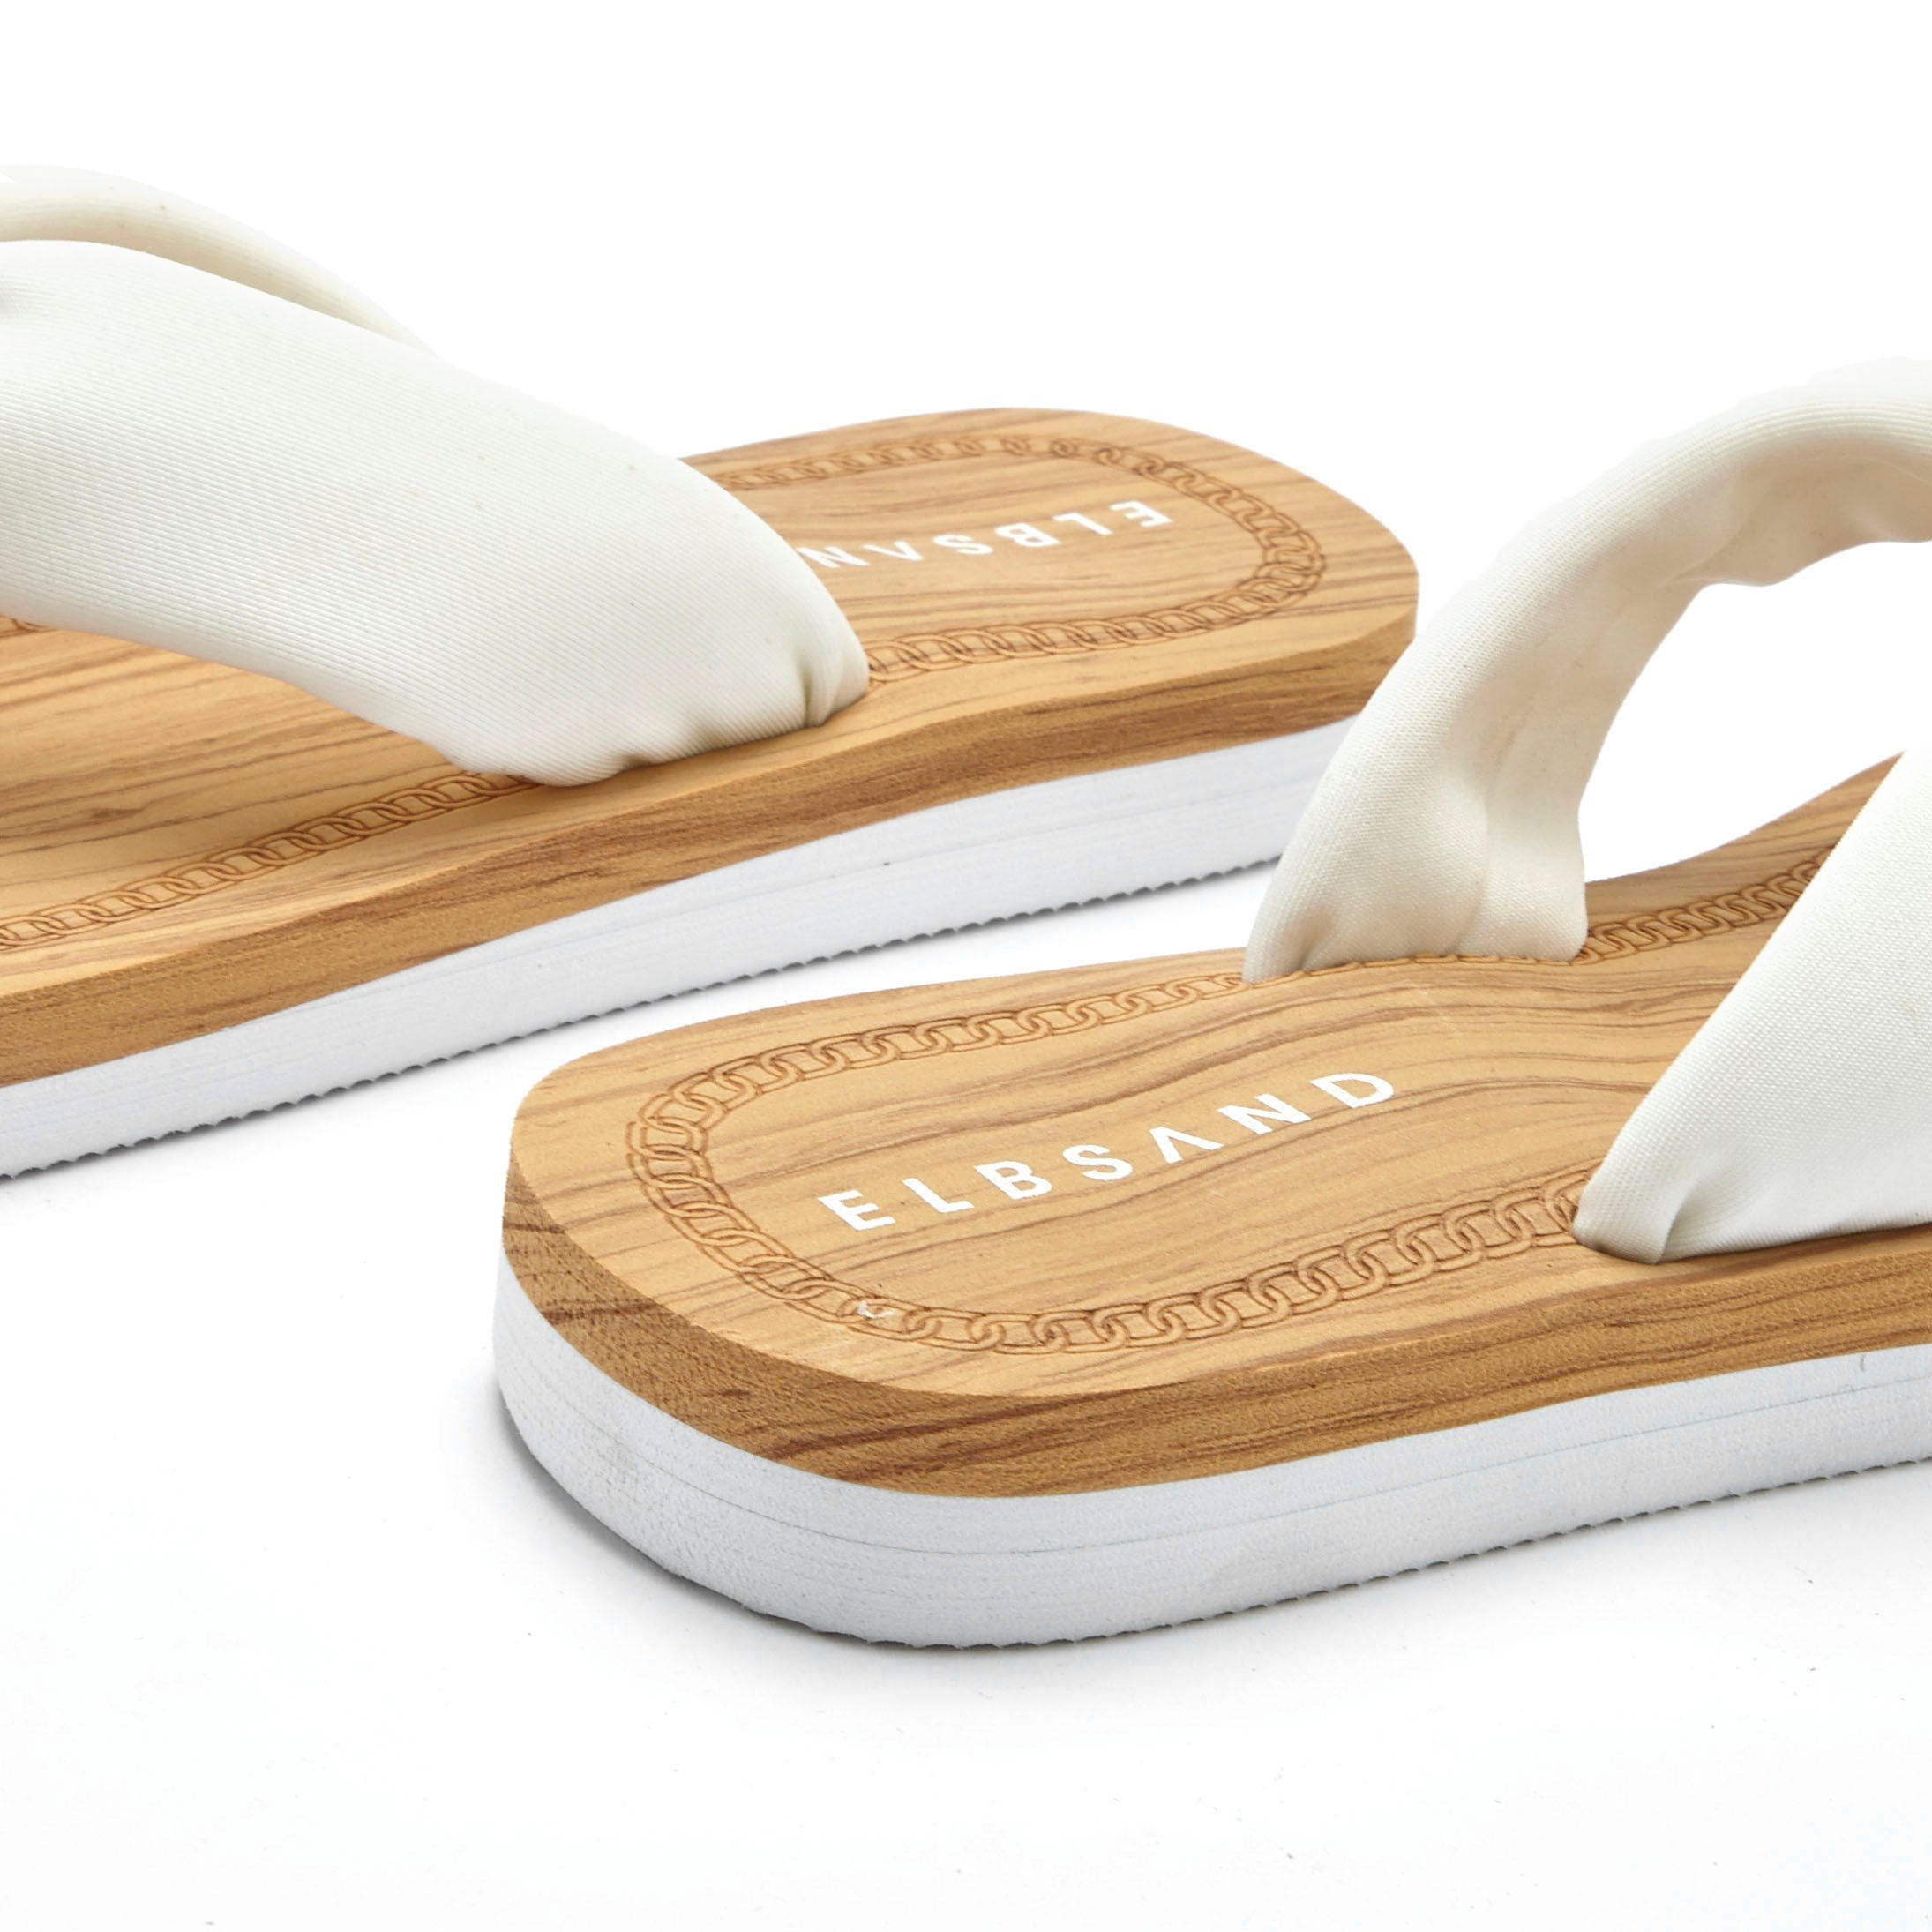 Elbsand weiß ultraleicht Badeschuh Sandale, VEGAN Badezehentrenner Pantolette,